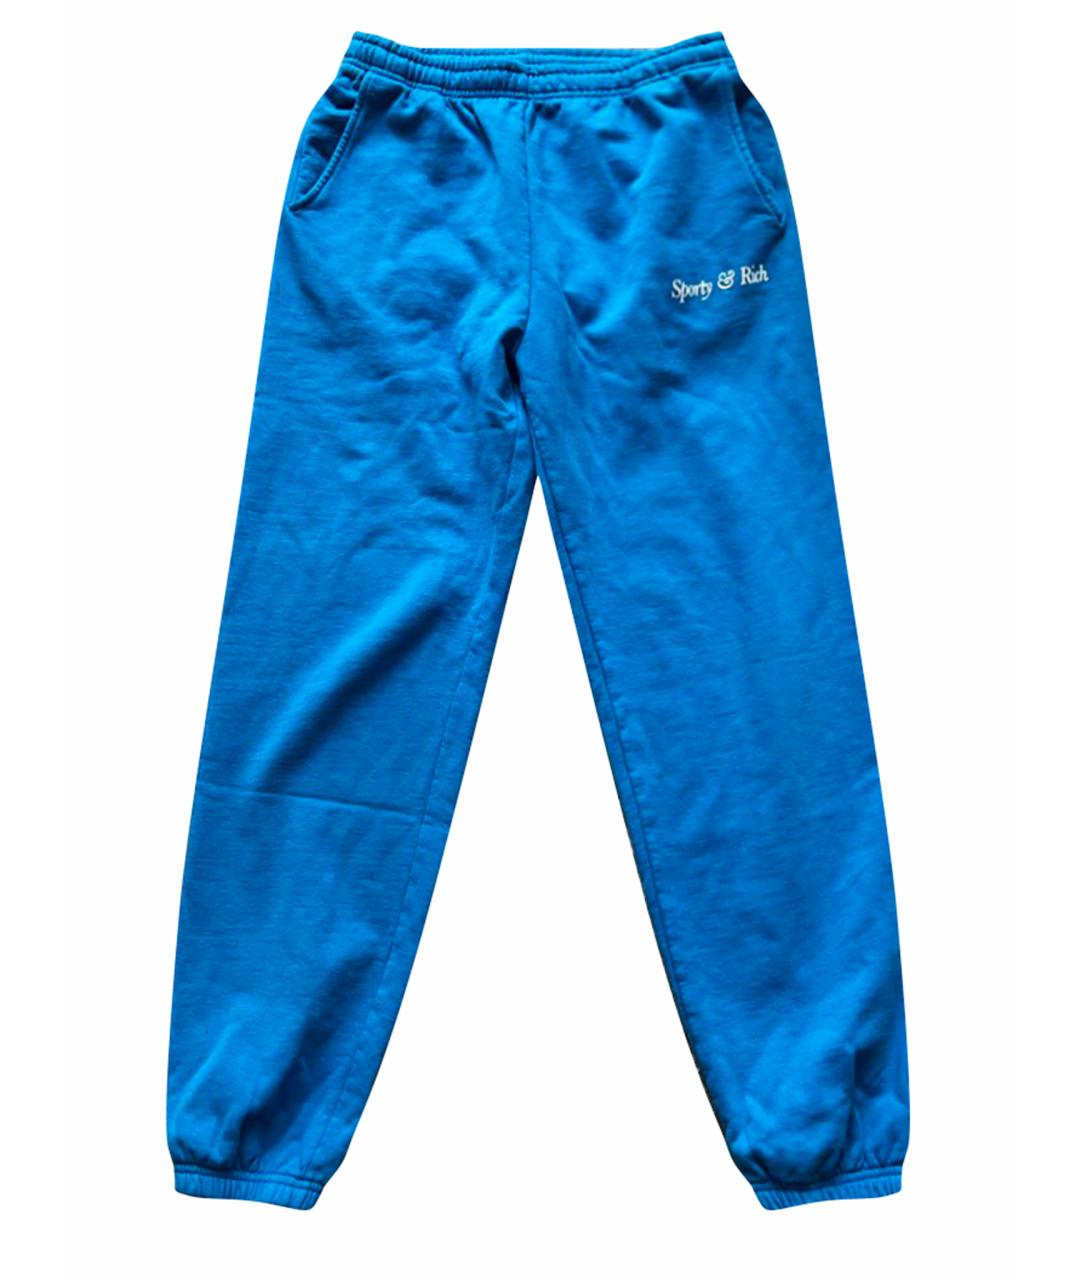 SPORTY AND RICH Синие хлопковые спортивные брюки и шорты, фото 1